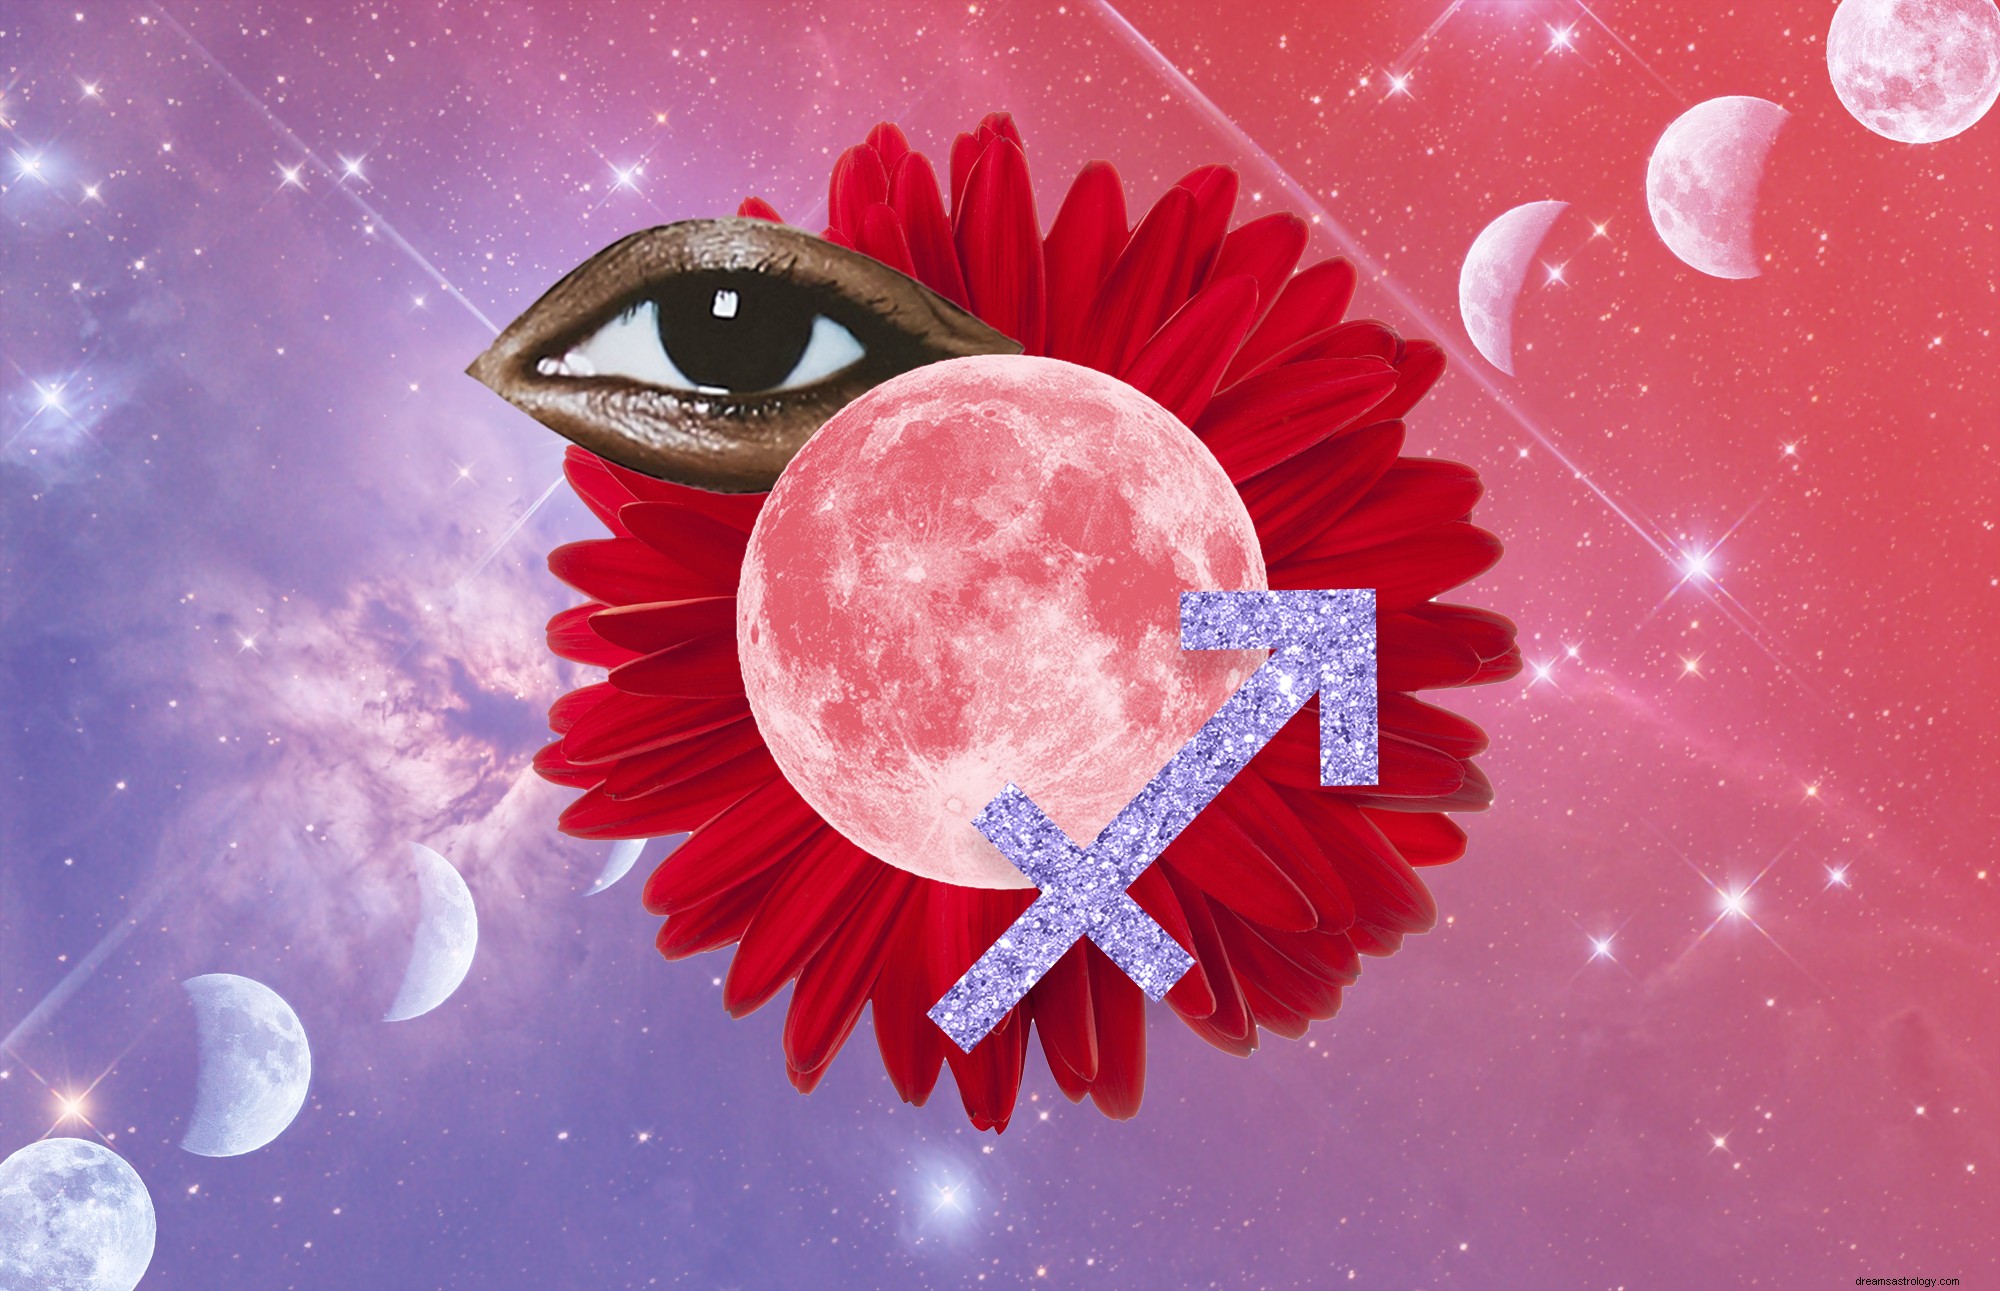 Maj 2021 s Super Flower Blood Moon Måneformørkelse kunne kaste dig ind i det næste kapitel af dit liv 